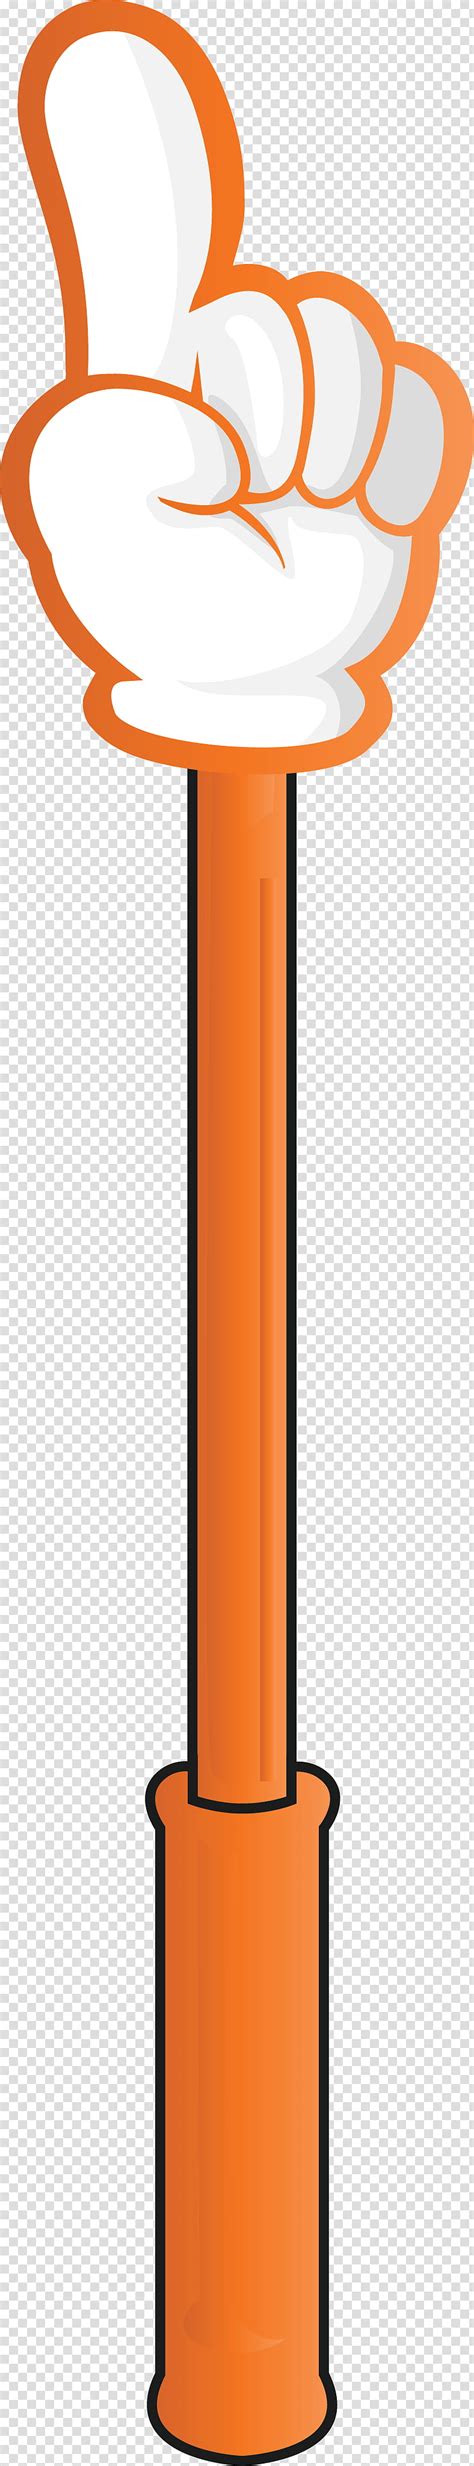 Finger Arrow, Orange, Line transparent background PNG clipart | HiClipart